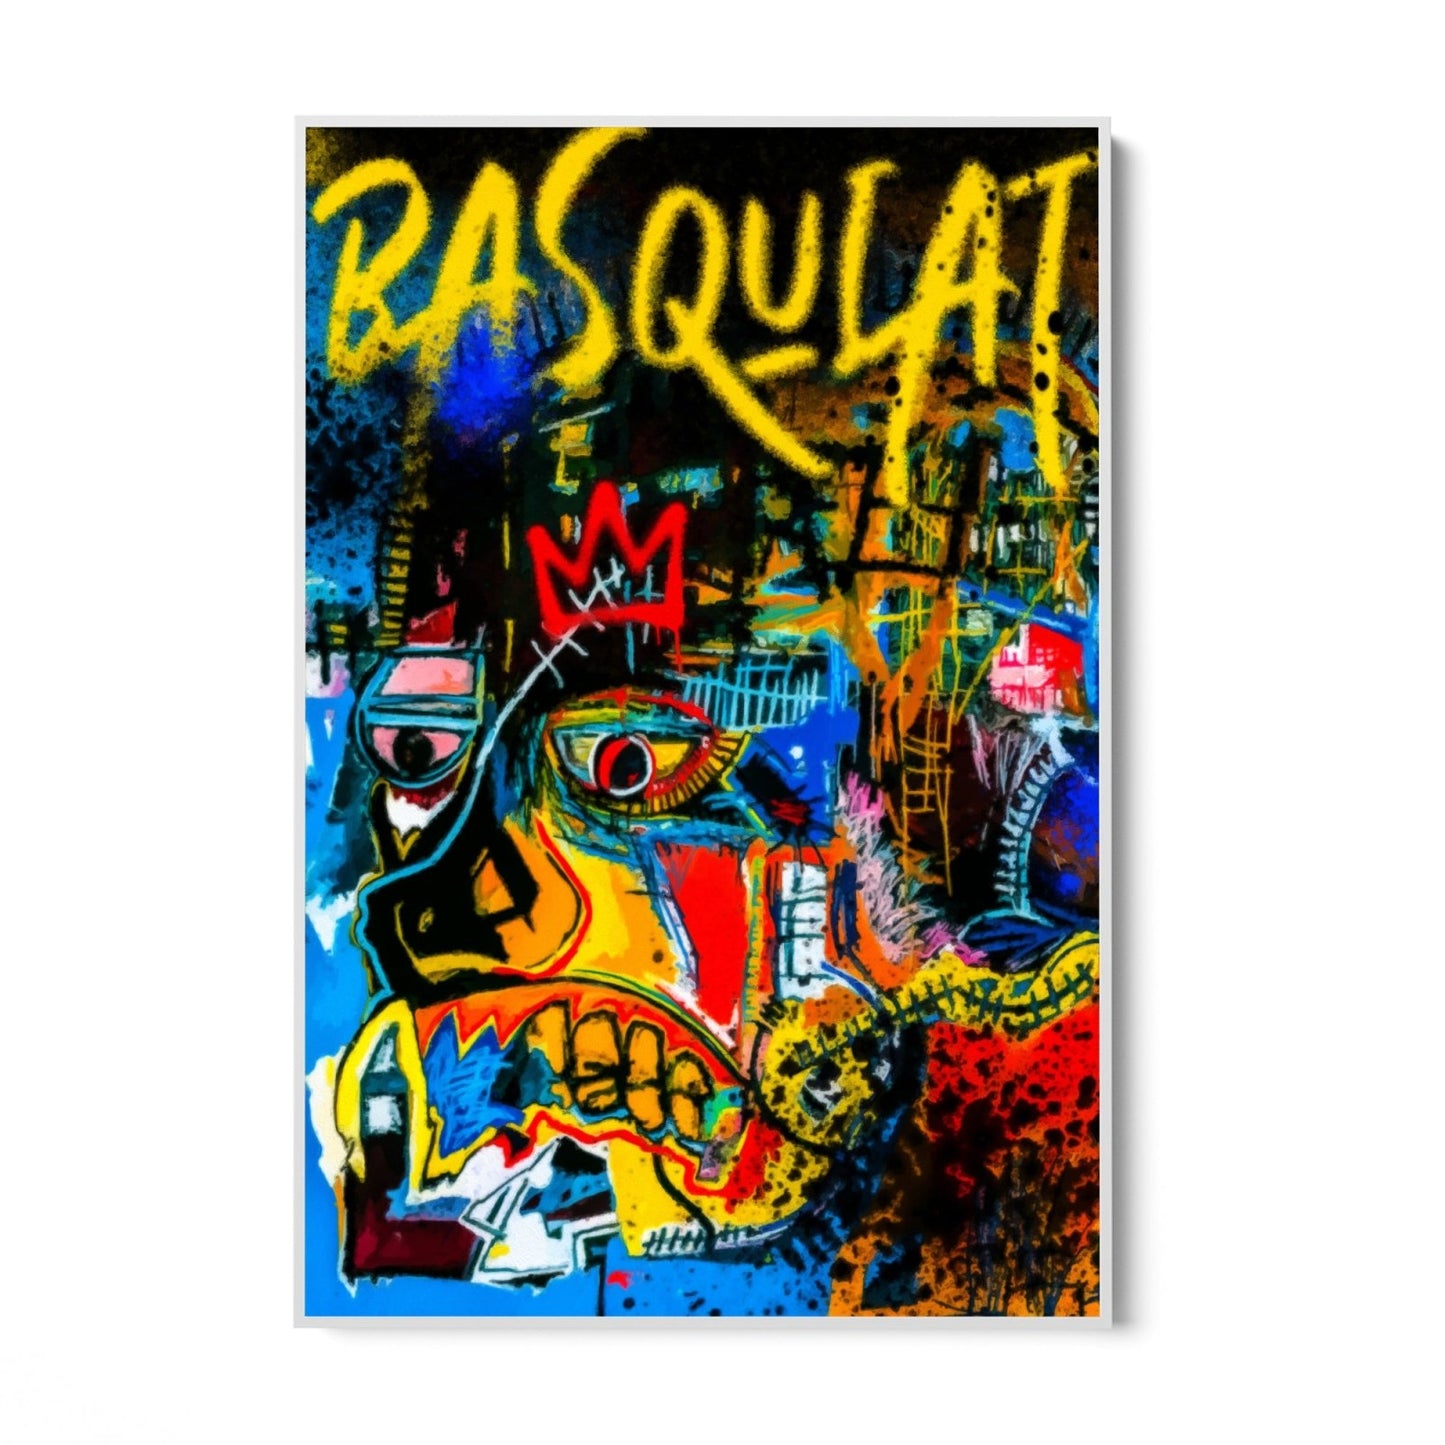 Basquiat canvas kunst aan de muur